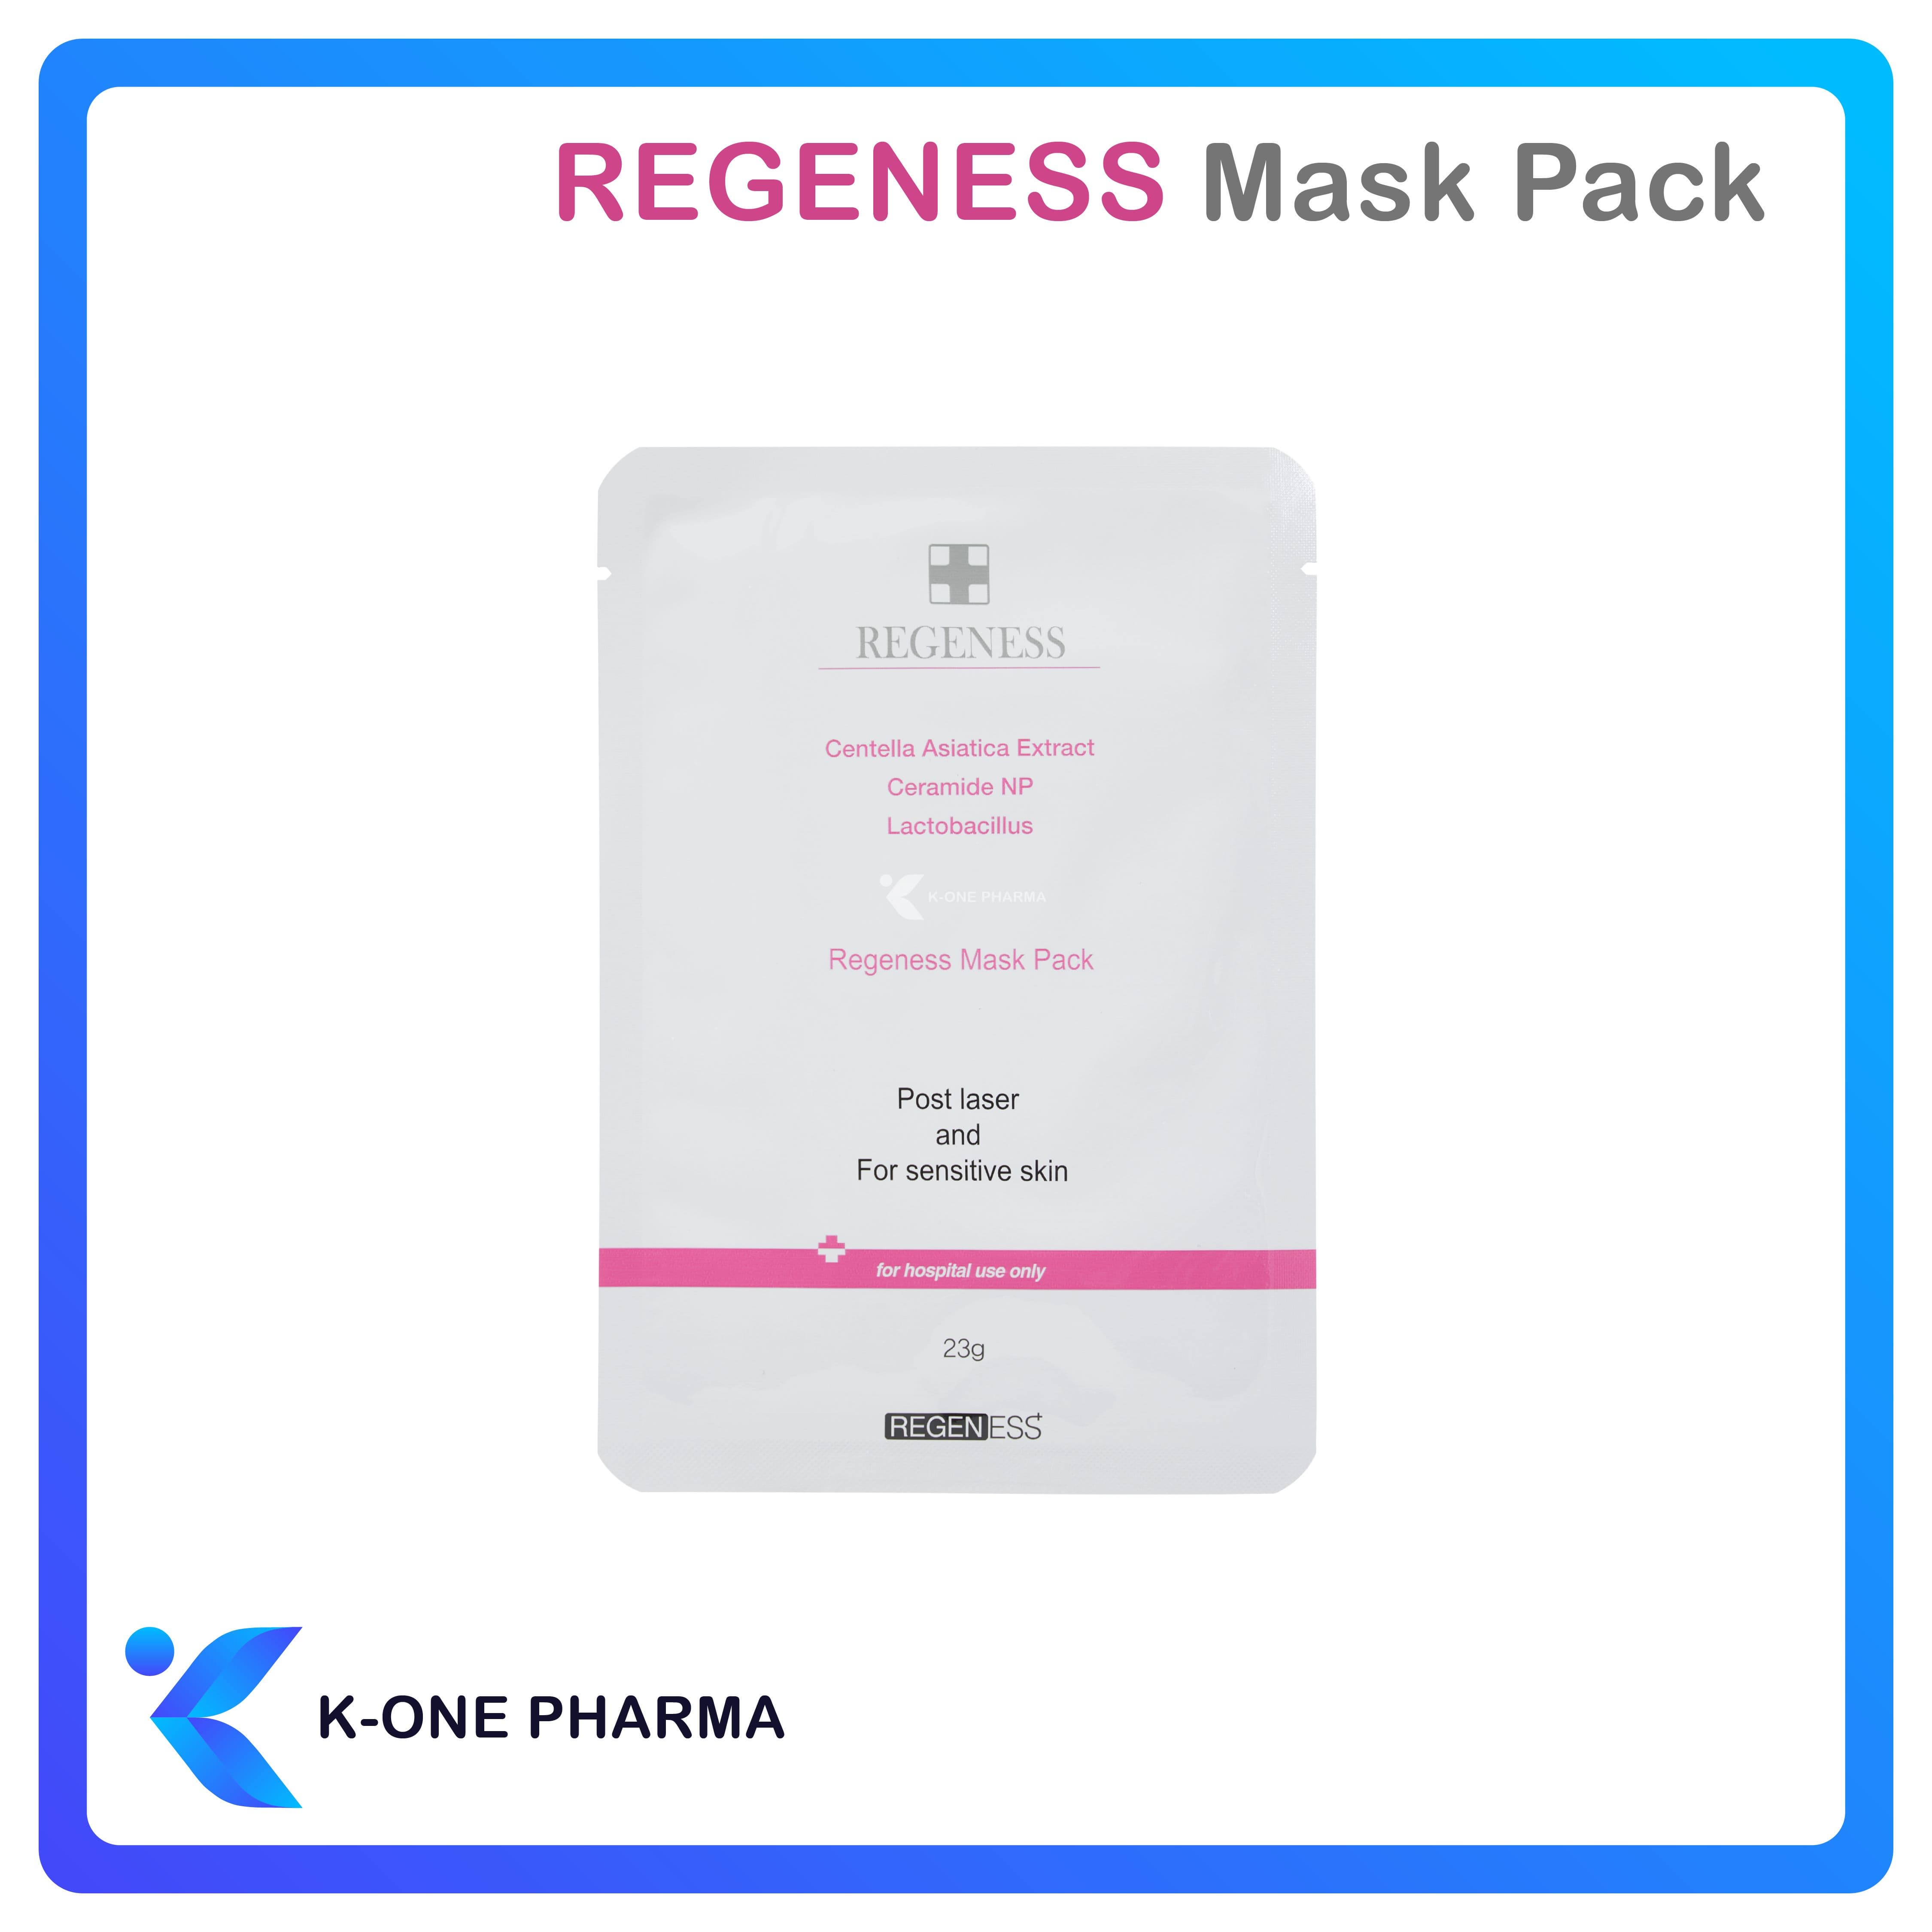 Regeness Mask Pack